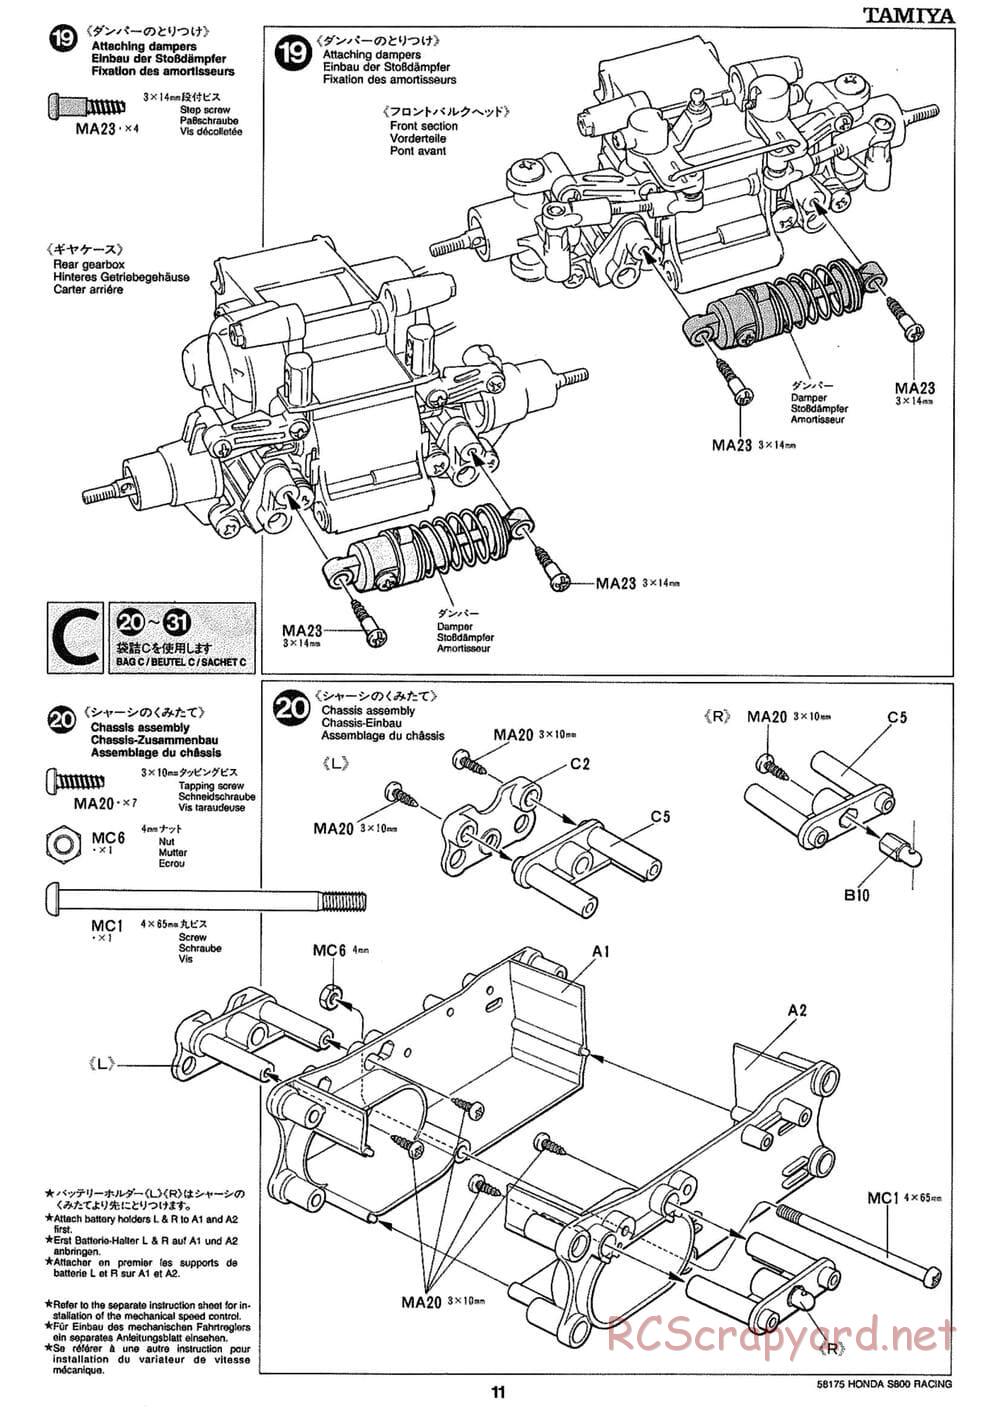 Tamiya - Honda S800 Racing - M02 Chassis - Manual - Page 11